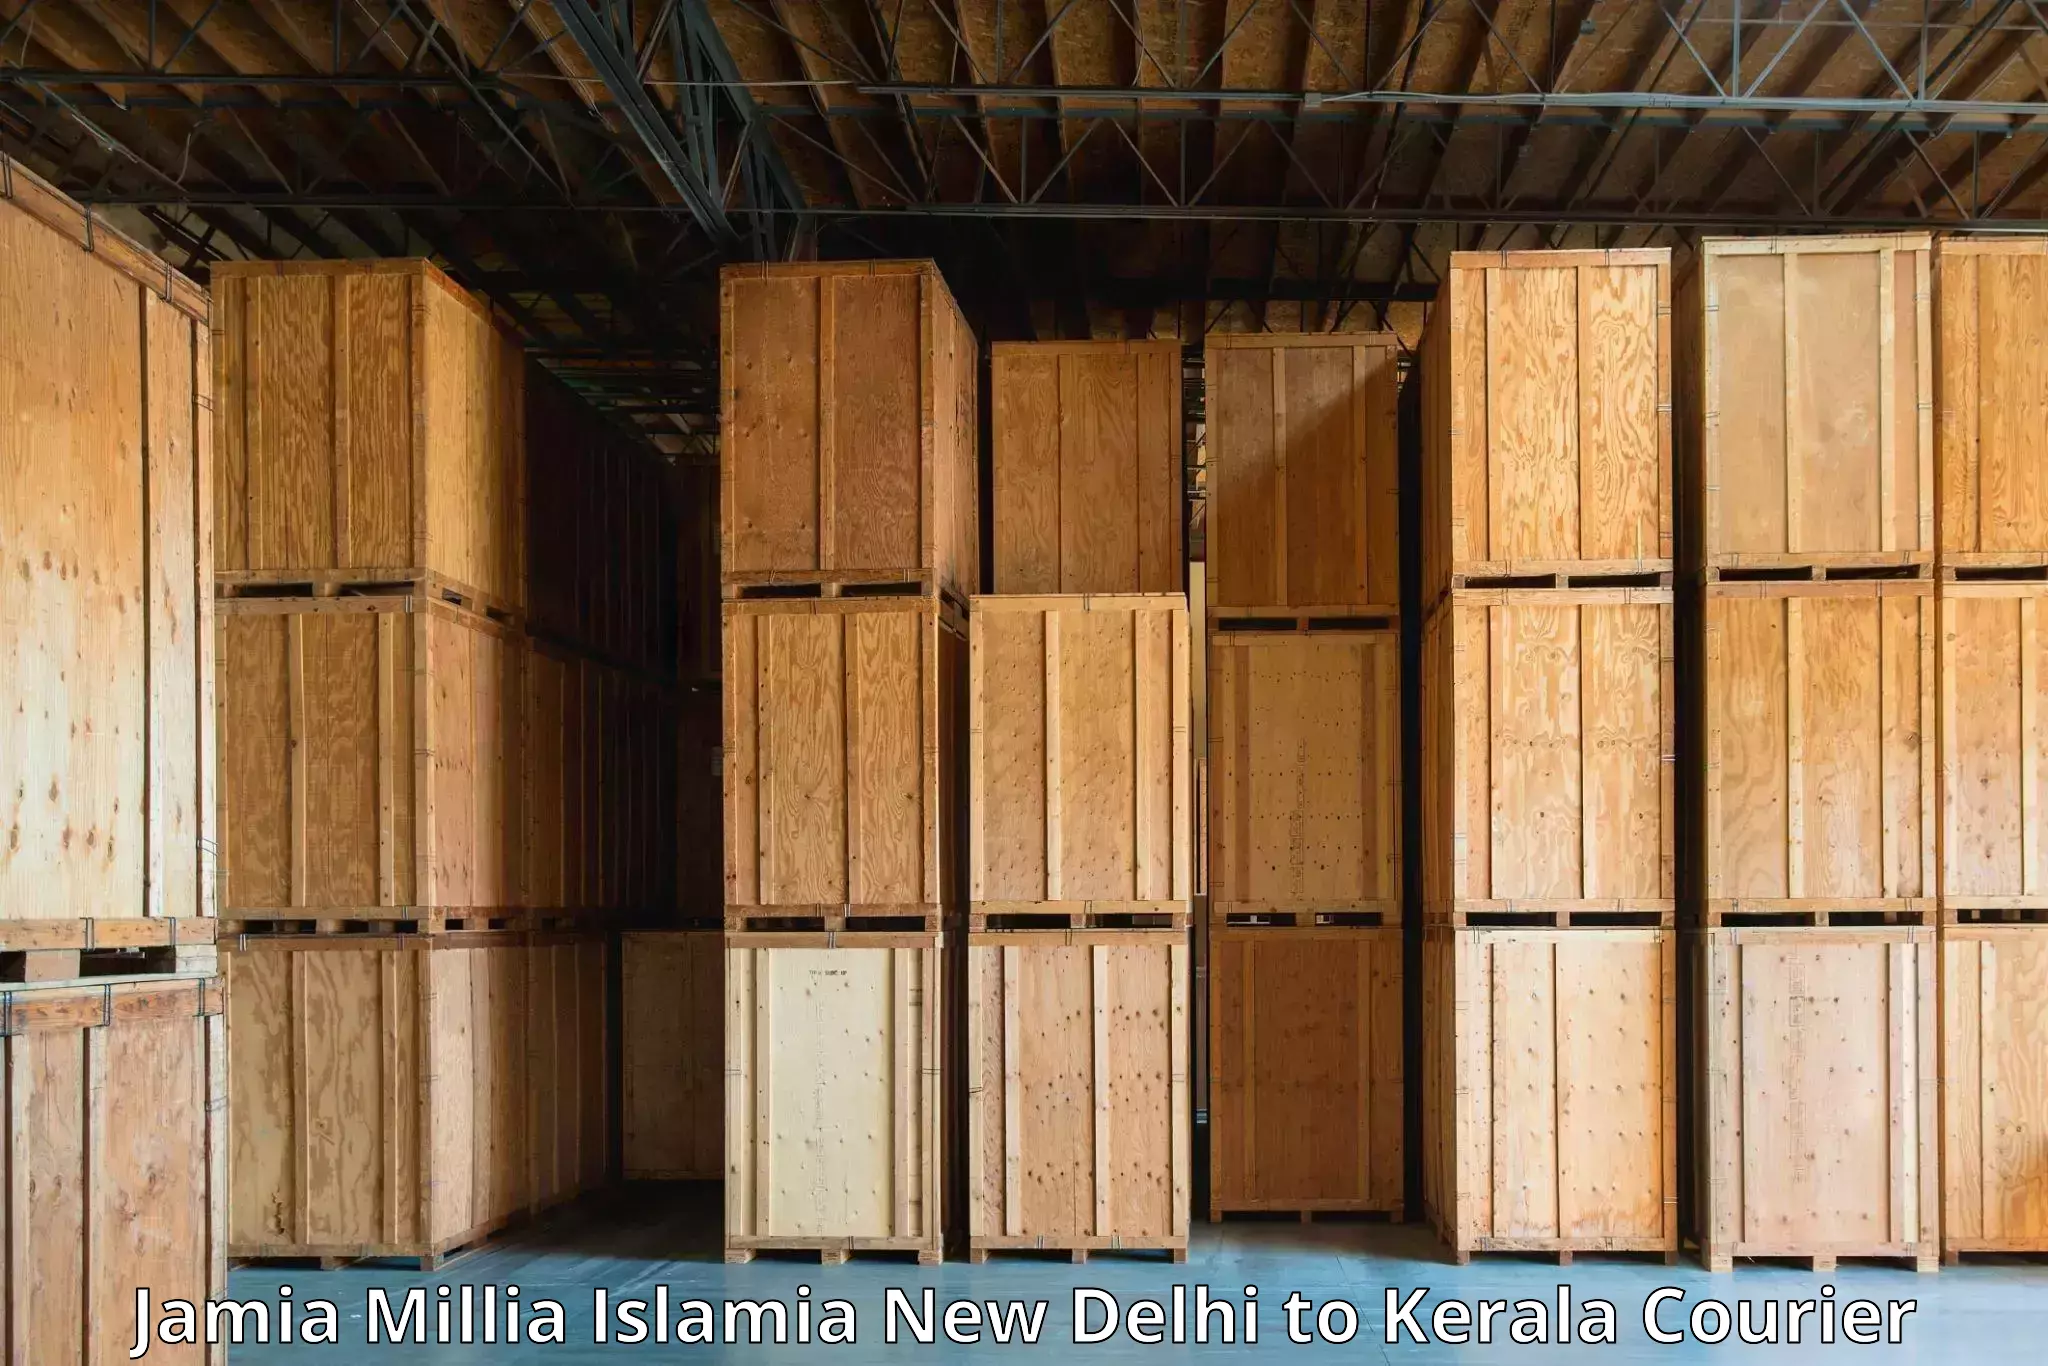 Express delivery capabilities Jamia Millia Islamia New Delhi to Ayoor